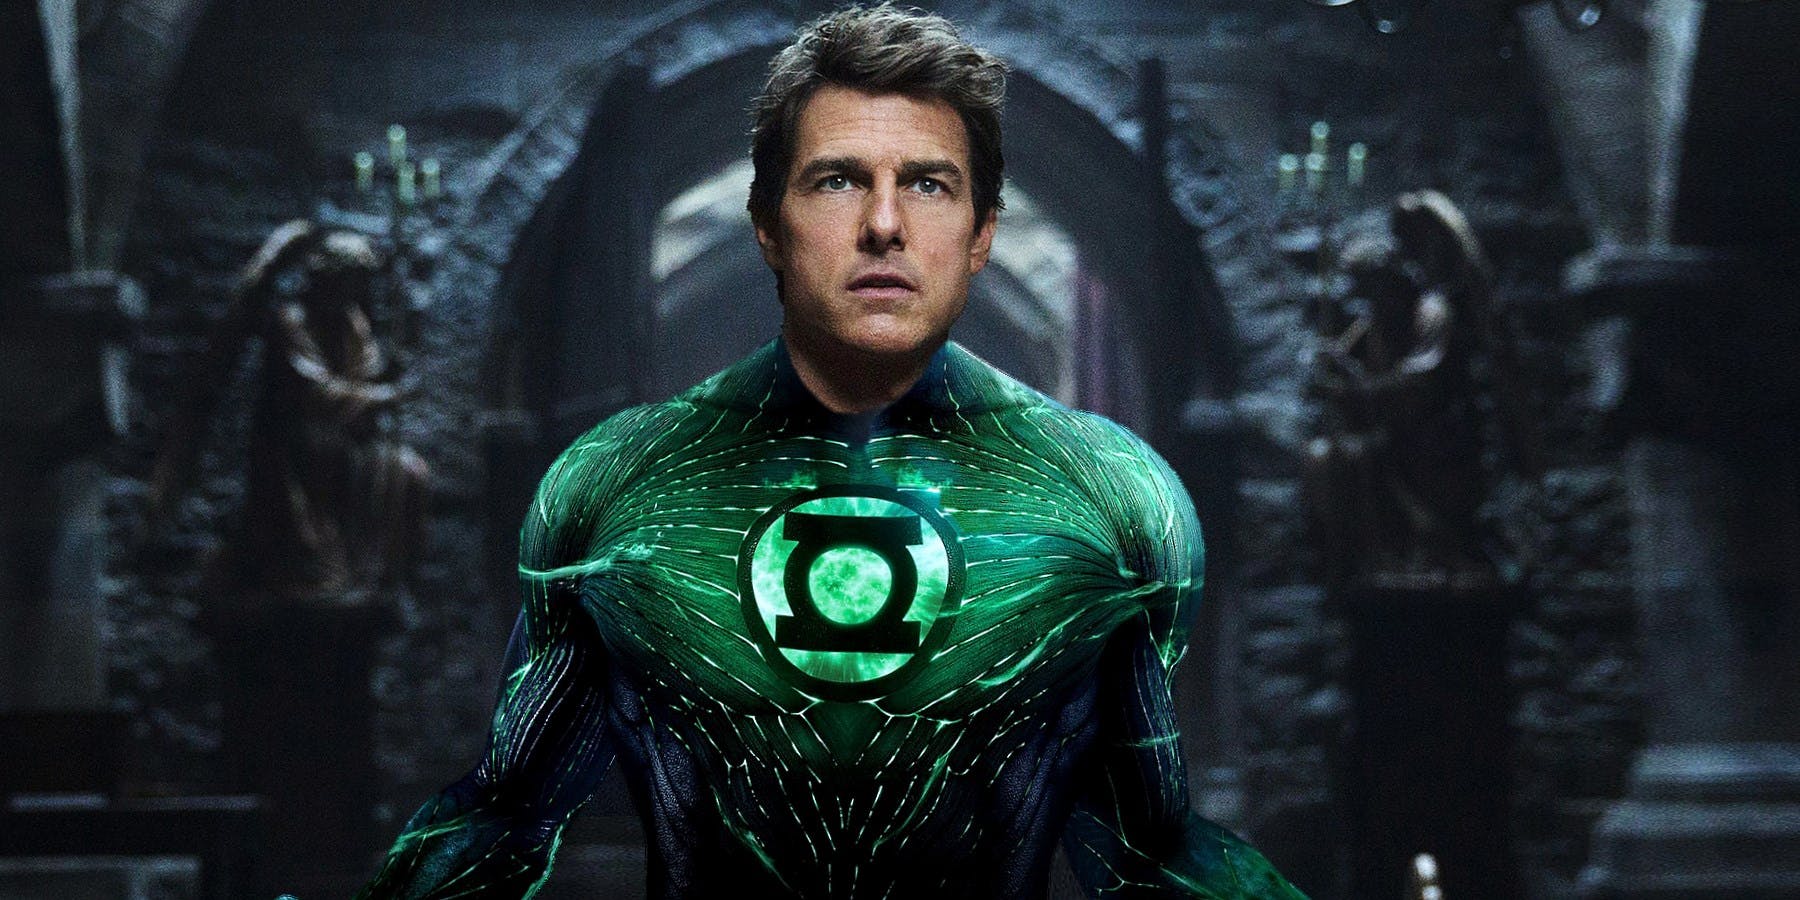 Liga da Justiça | Tom Cruise é inserido como Lanterna Verde em cena do filme; veja!